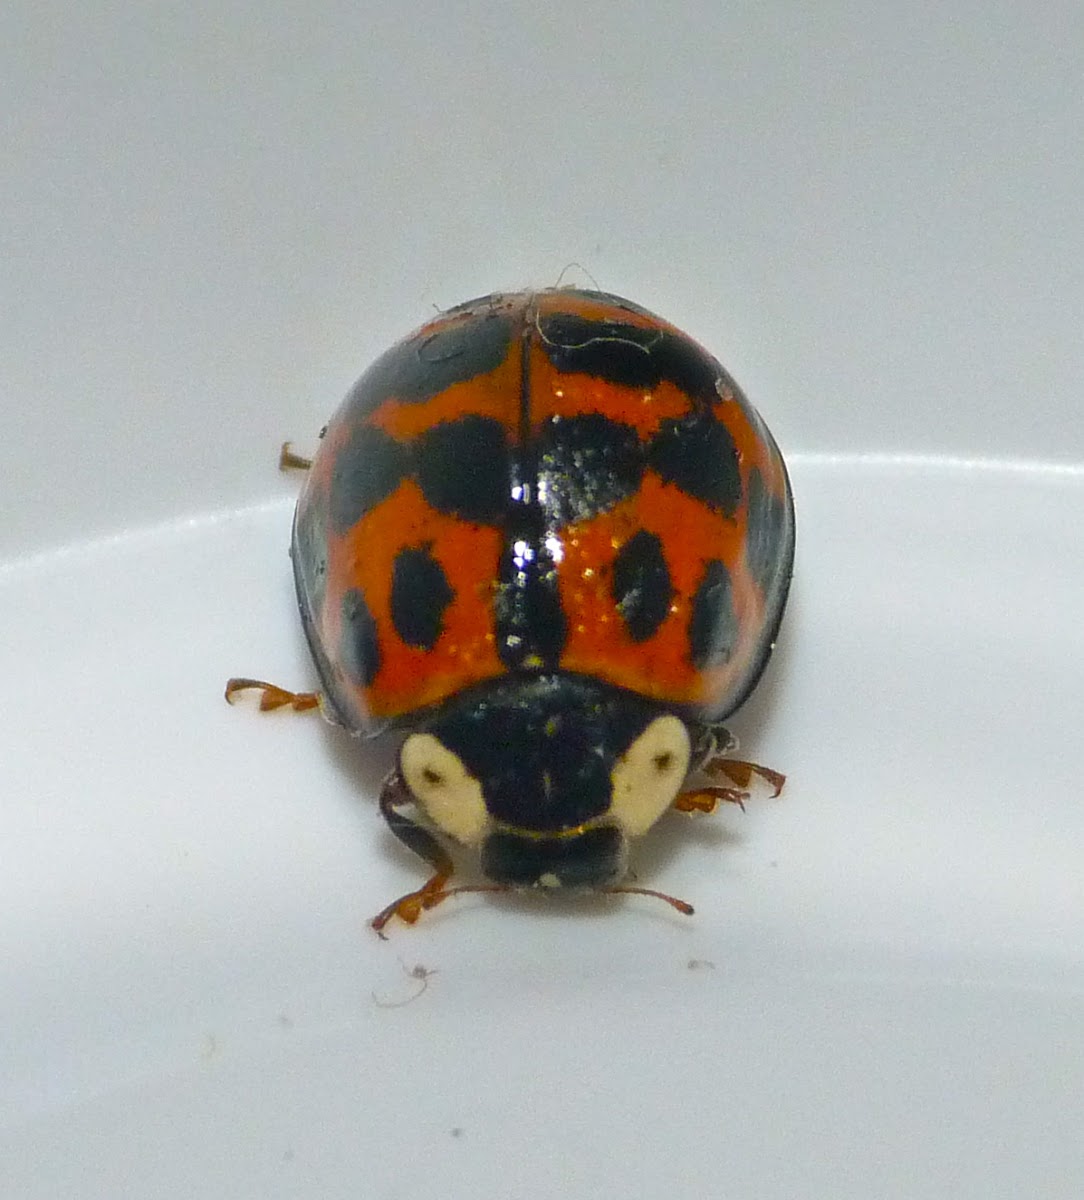 Japanese ladybug